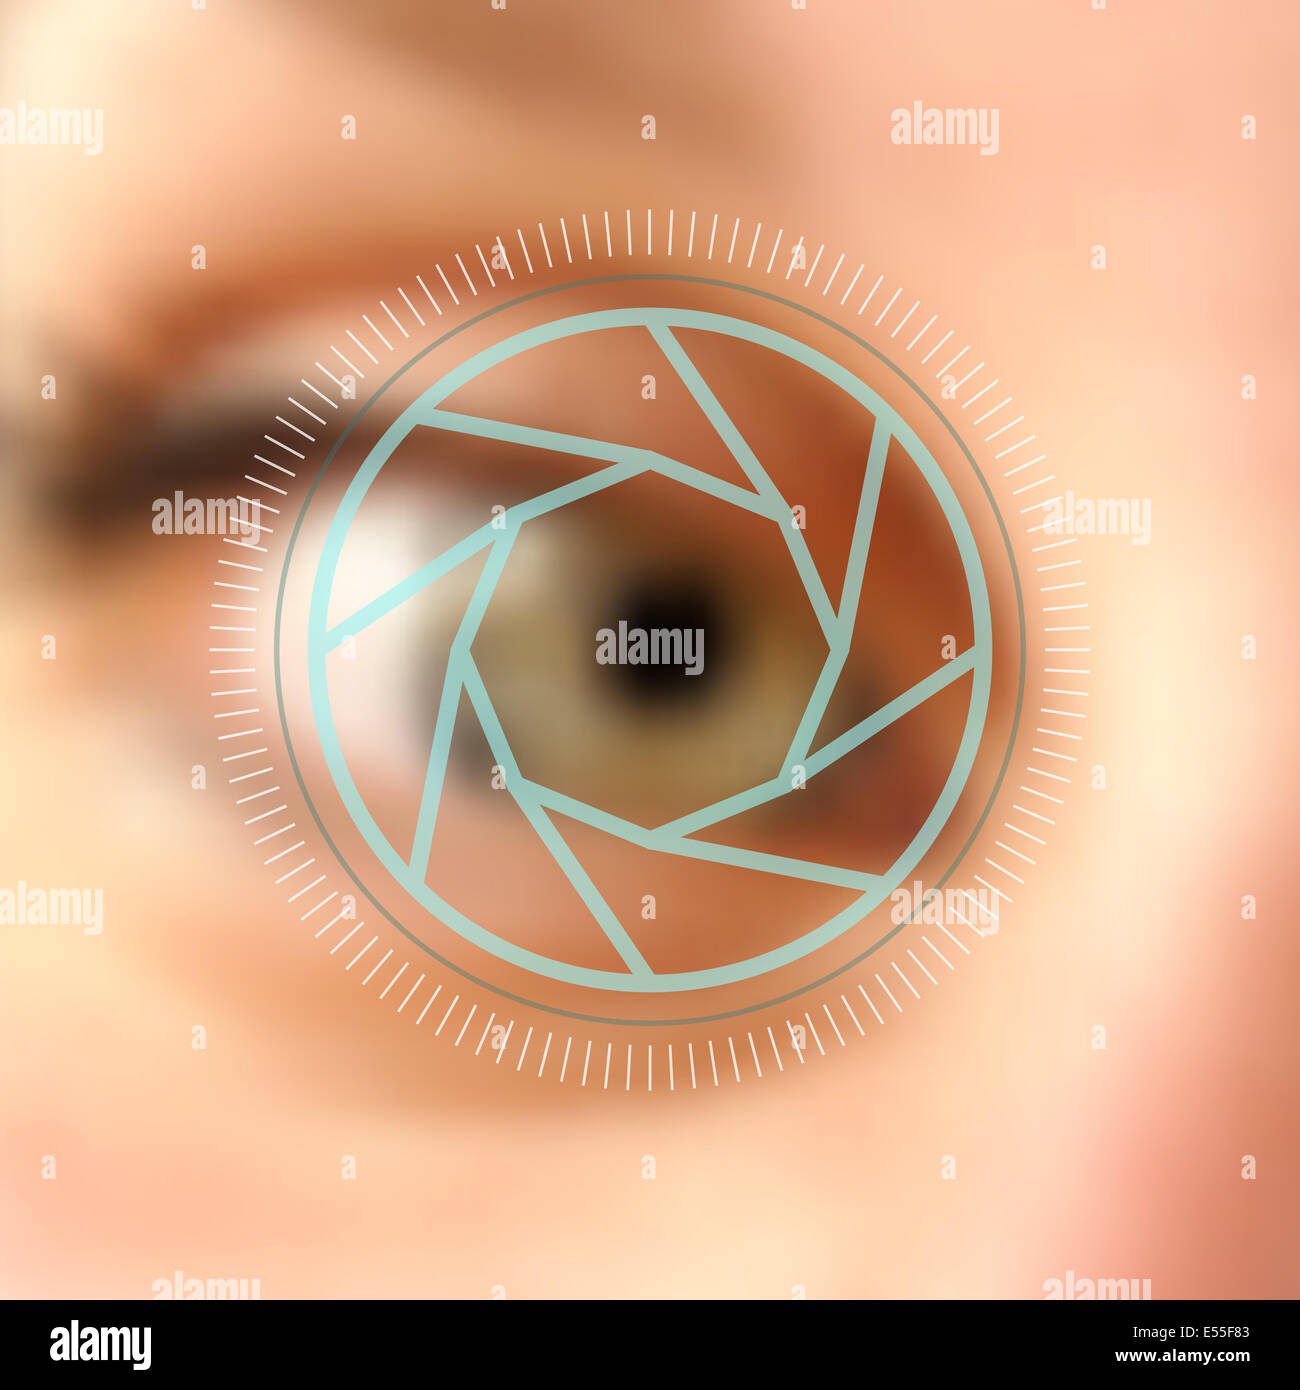 Digitale Fotografie menschliche Auge Kamera Objektiv Konzept Hintergrund. EPS10 Vektor-Datei mit verschwommenen Effekt und Transparenz Schichten. Stockfoto